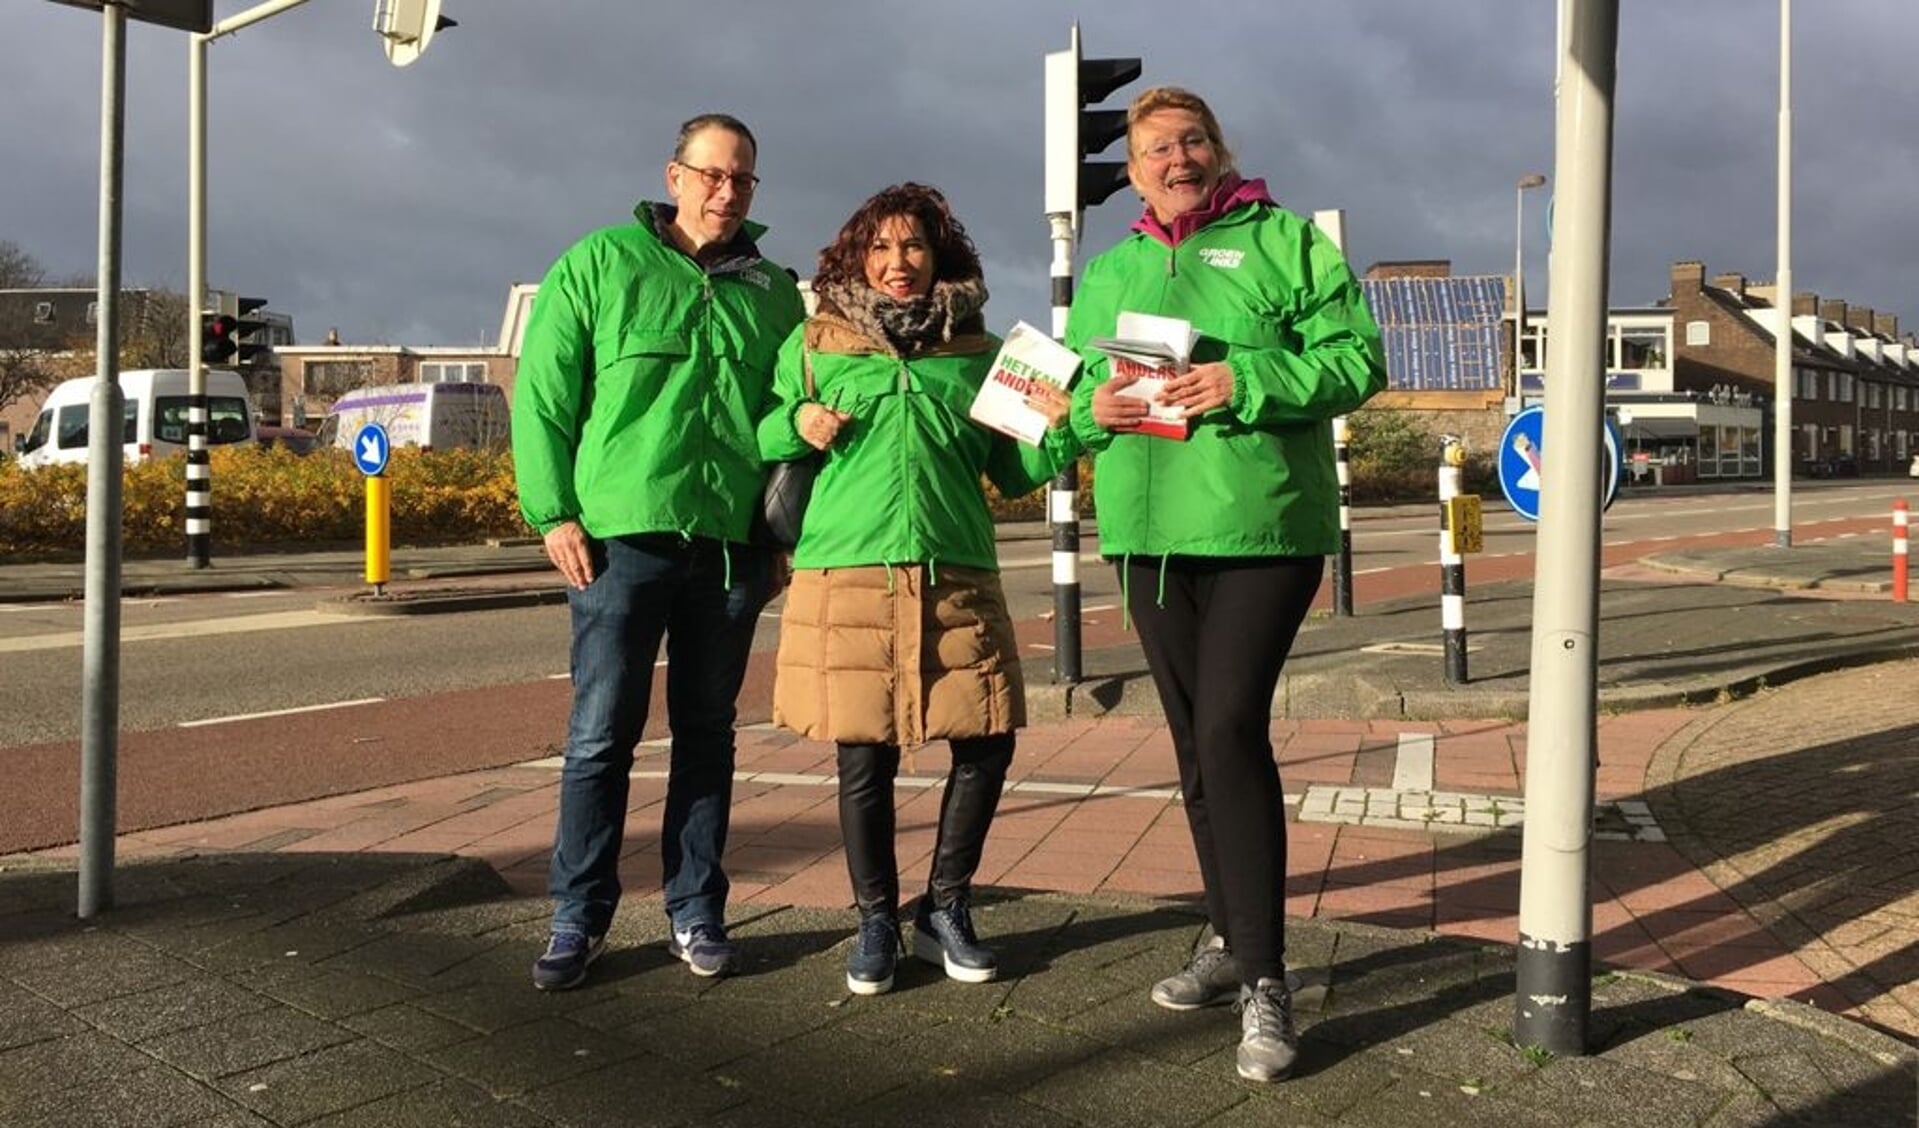  Nevin Özütok (midden) op campagne, samen met (links) Jos Burger (GroenLinks Heemskerk) en fractievoorzitter Tekla Hulscher van GroenLinks Beverwijk.